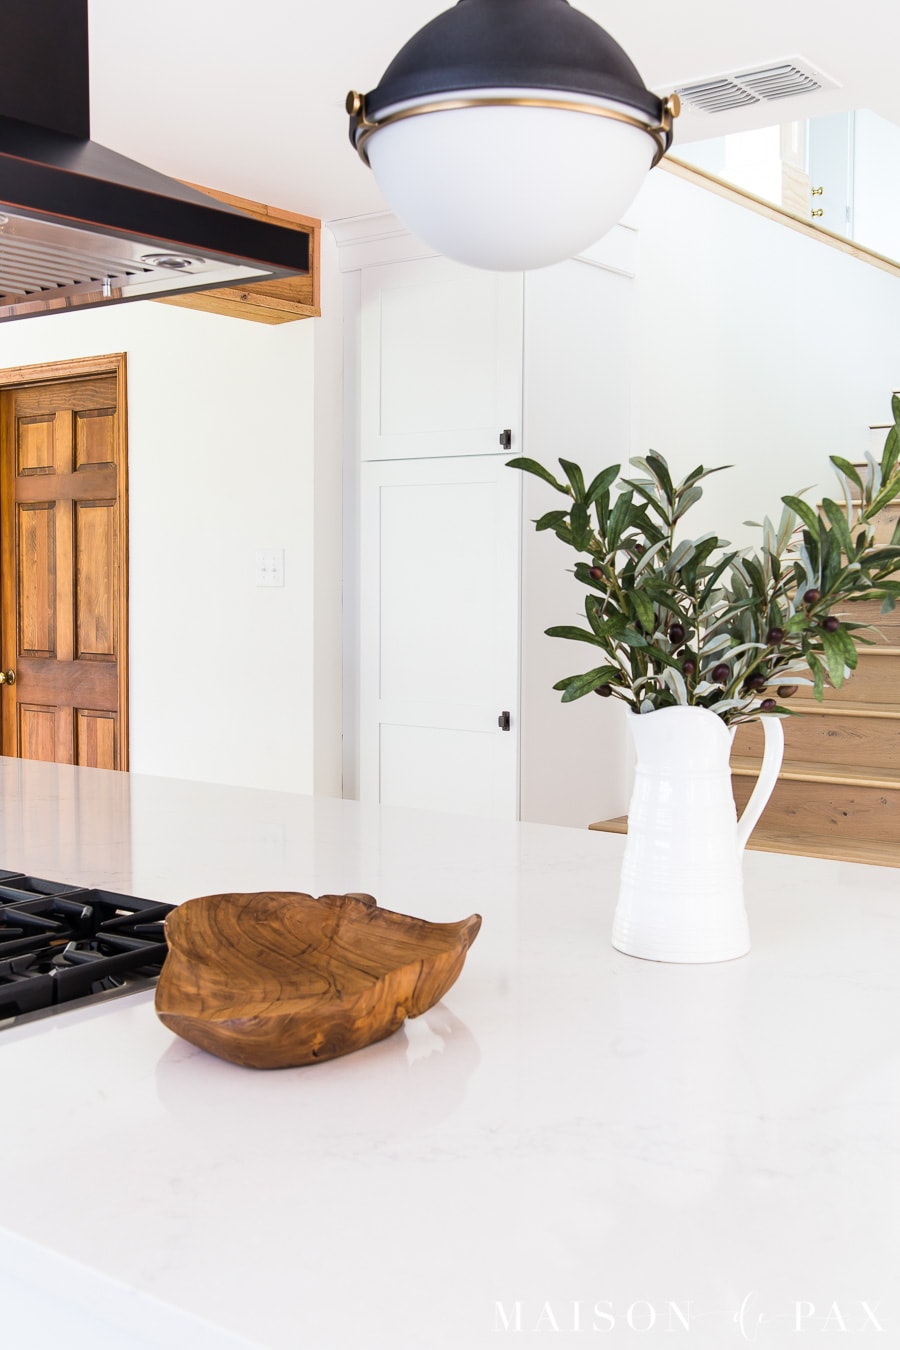 Rustic Modern Kitchen Cabinets - Maison de Pax